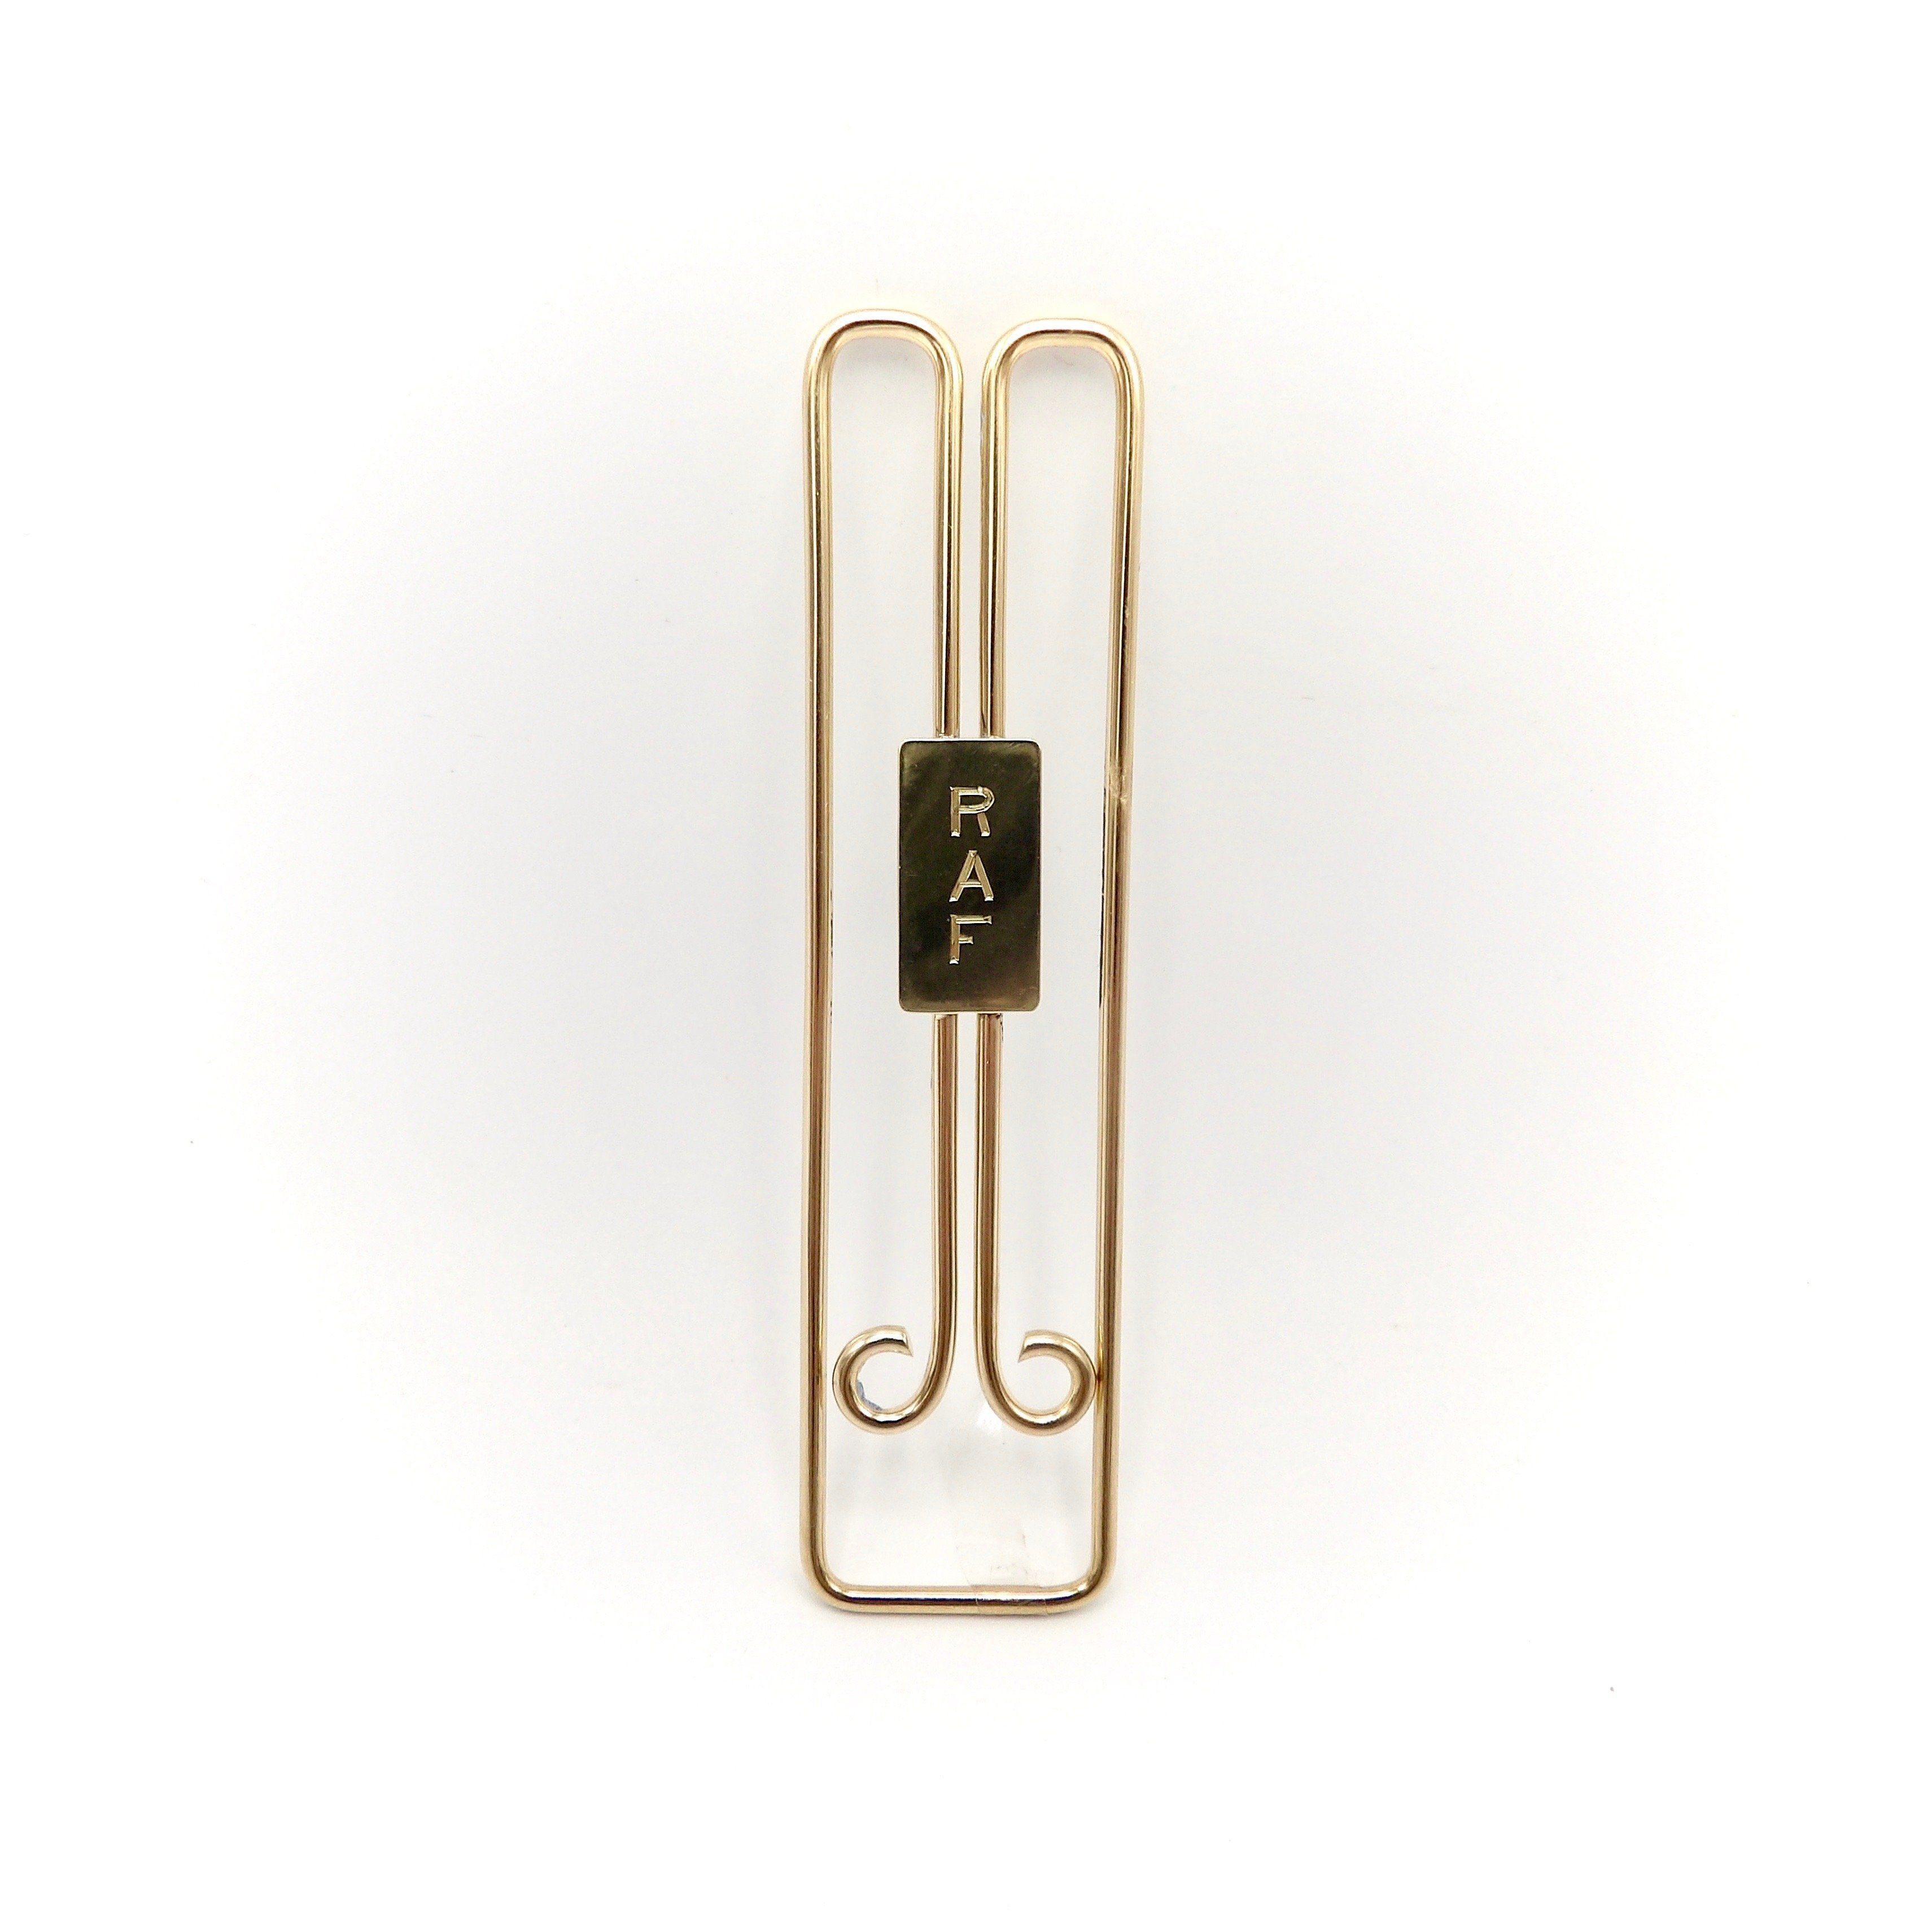 Il s'agit d'une pince à billets en or 14 carats de Cartier au design élégant.  Il présente un design rétro classique et aérodynamique.  Fabriqué en fil d'or lourd et rond de 1,8 mm d'épaisseur, il a été plié de façon magistrale pour obtenir cette